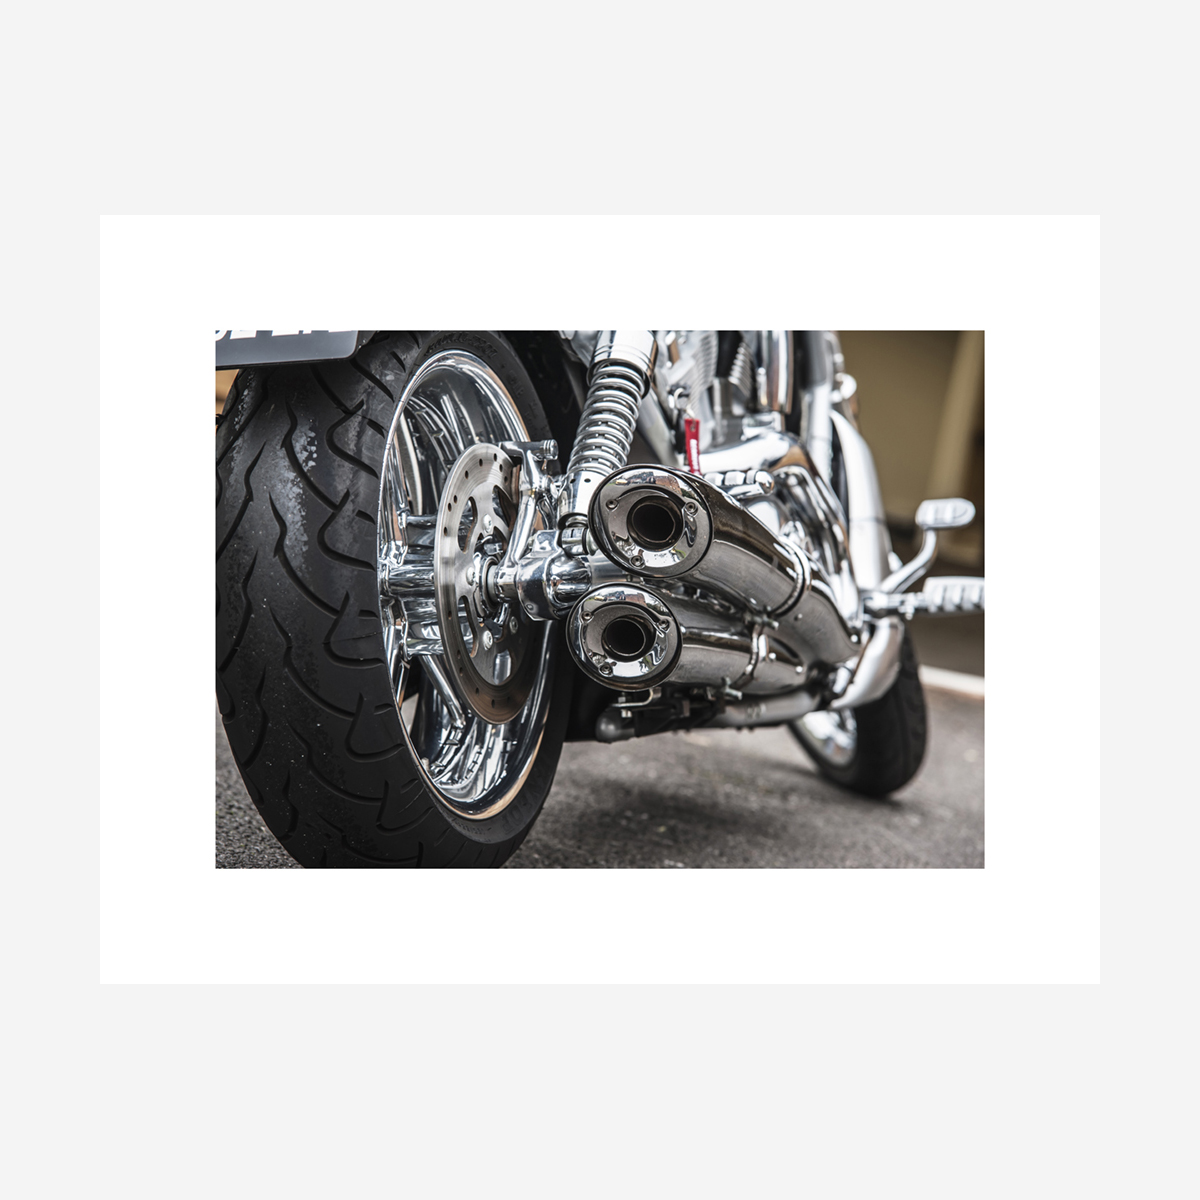 Harley Davidson V-Rod Exhaust 26" x 20"